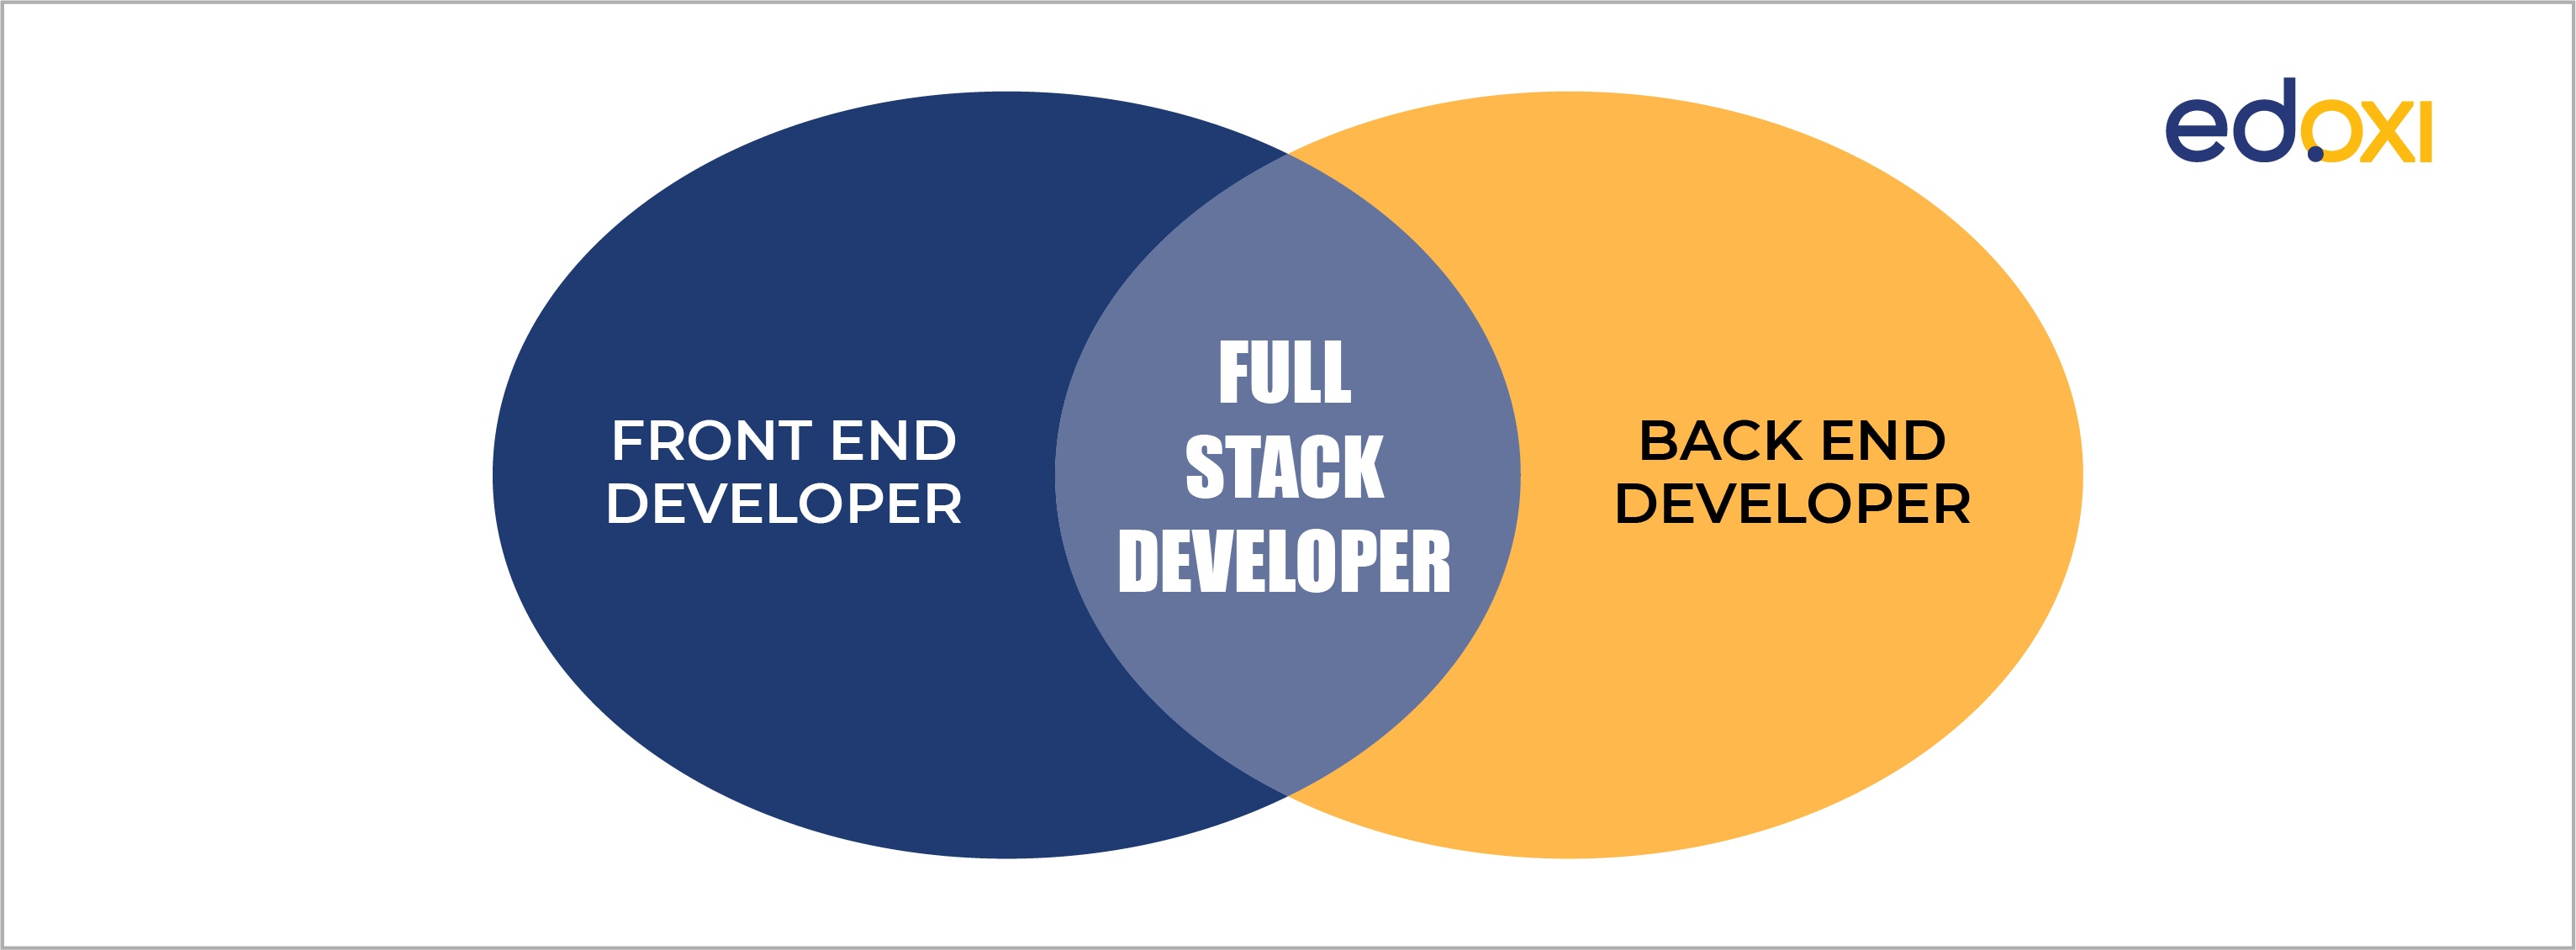 Image alt text: Full Stack Developer represented using a Venn Diagram